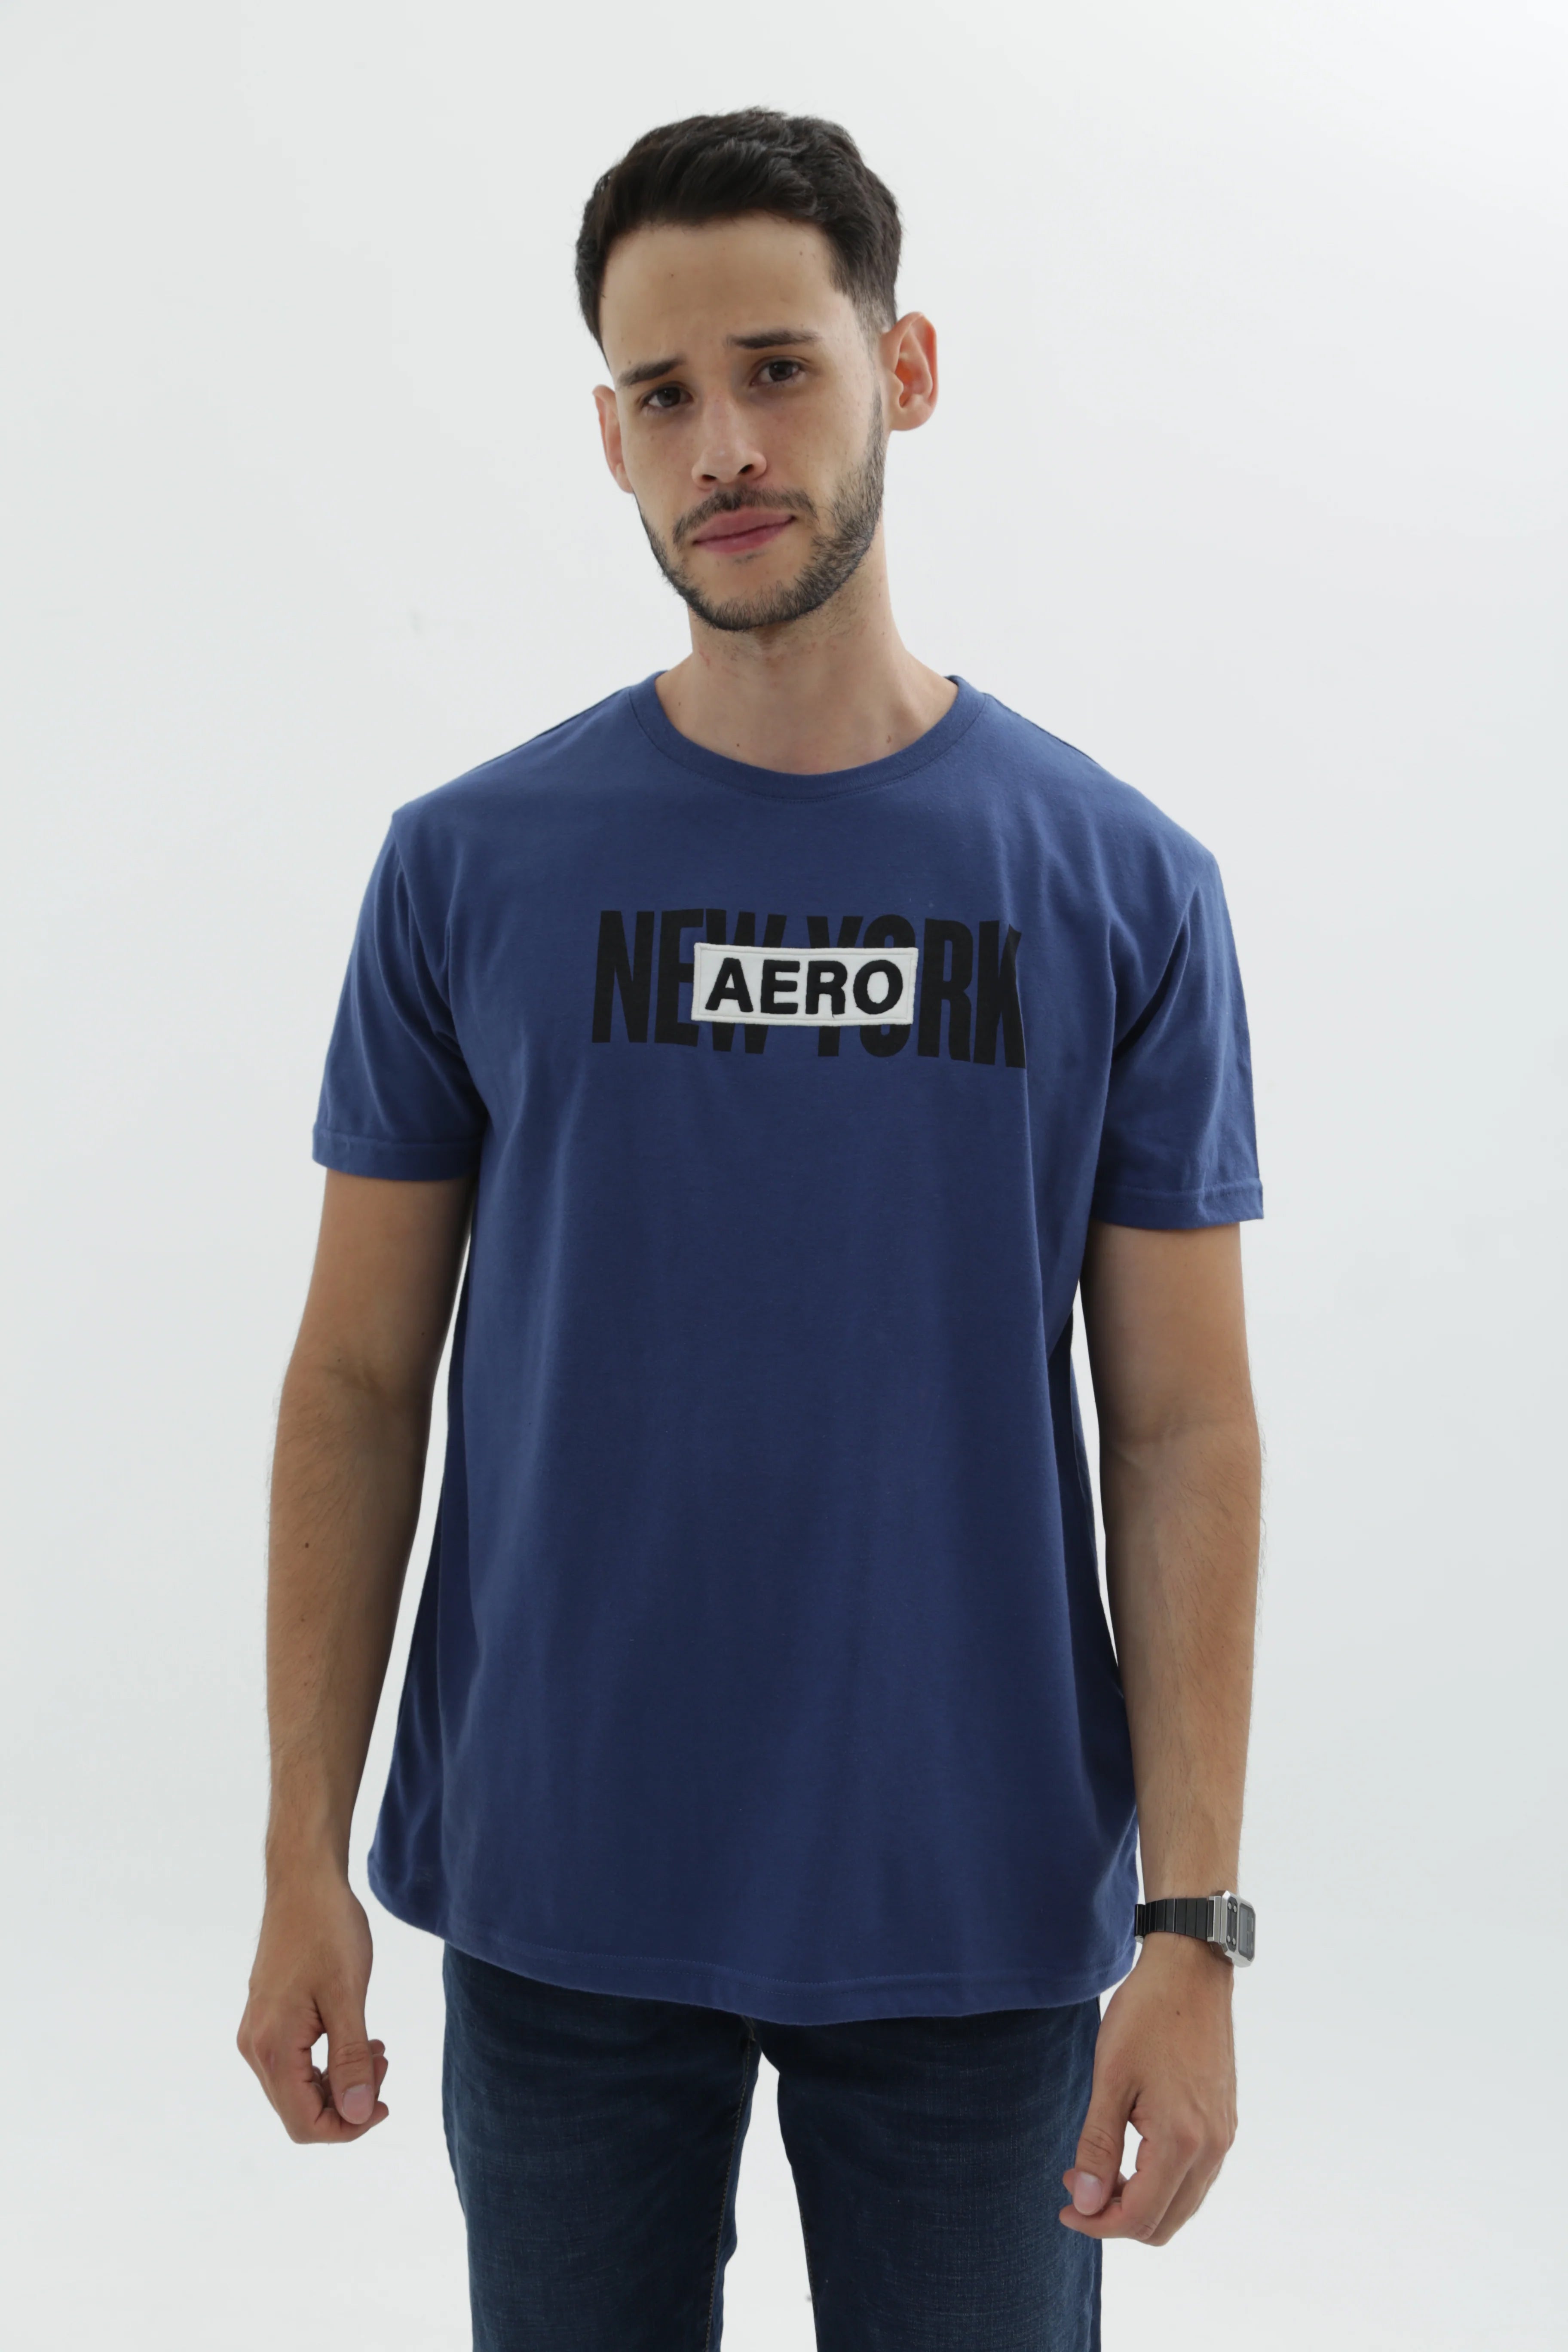 Camiseta Para Hombre Level 2 Graphic Tees Aero Level 2 Graphic Tees Dress Blues Blues 3334